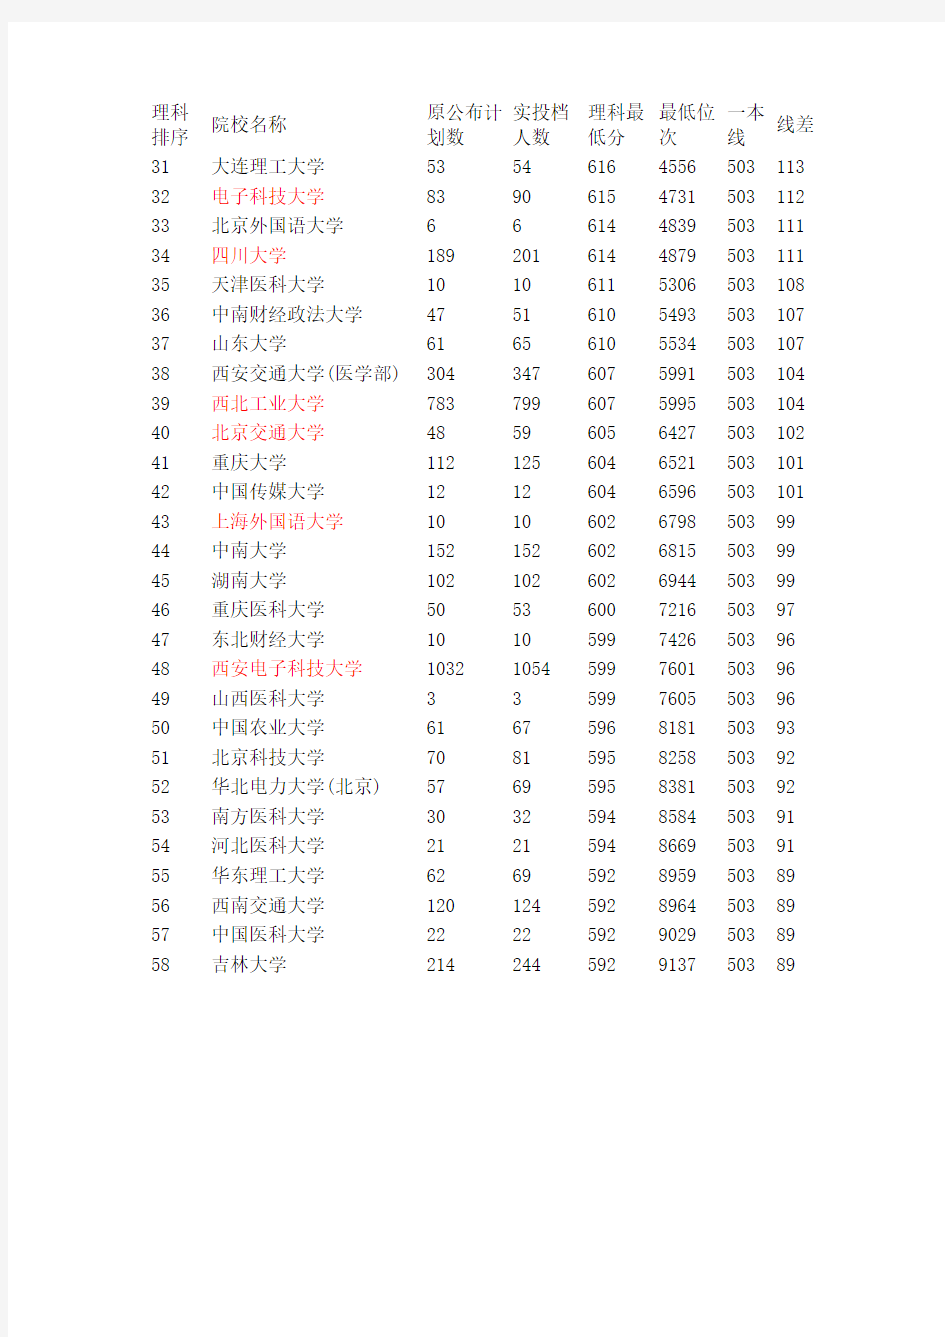 2014陕西高考一本理科正式投档分数线情况统计表